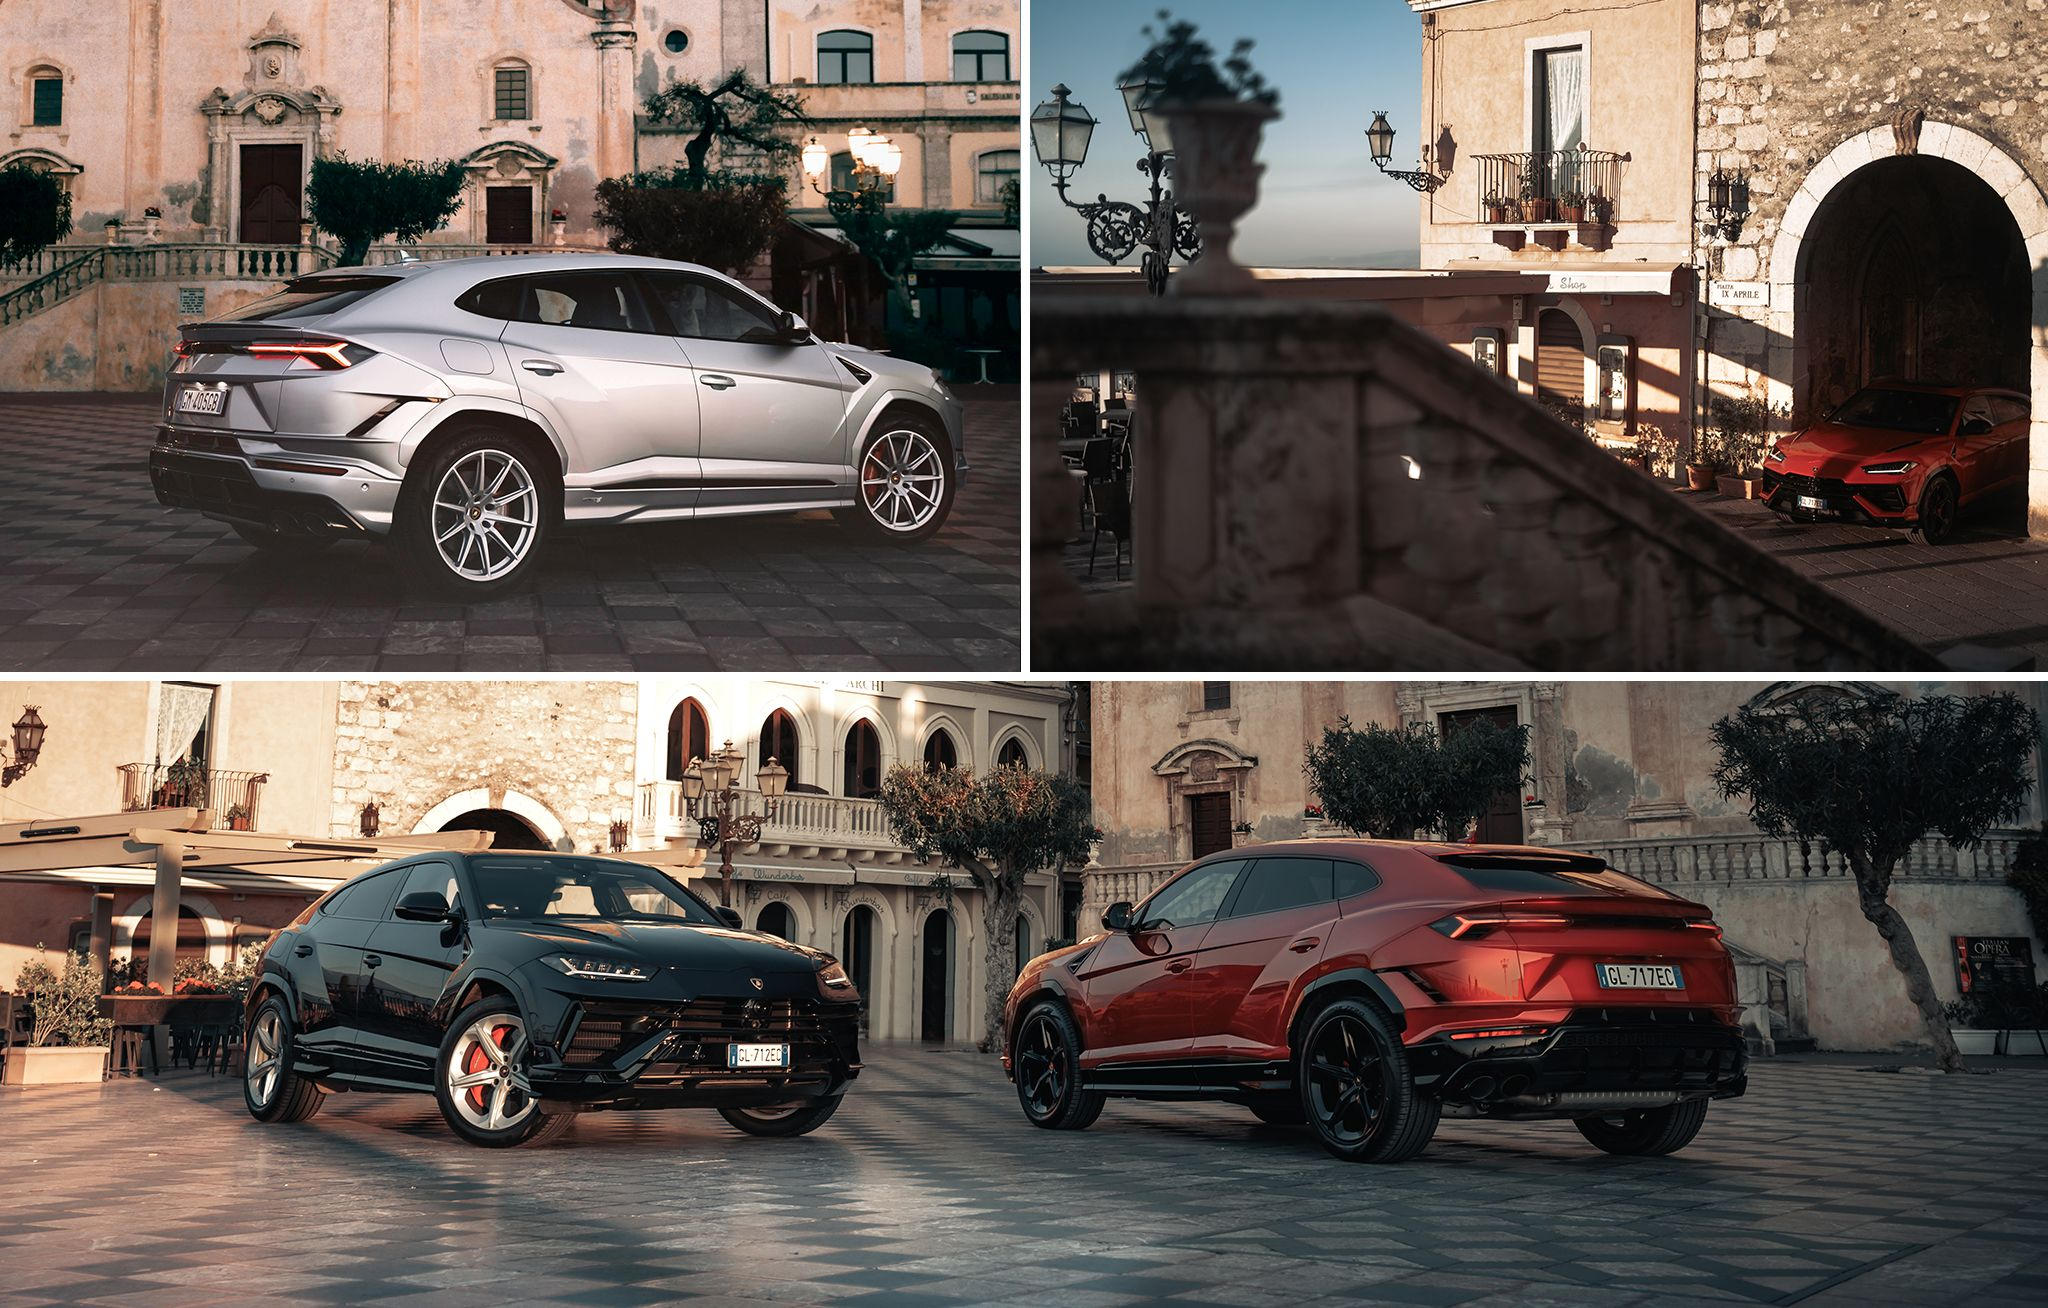 Lamborghini - The Super SUV explores authentic Sicilian charm and culture